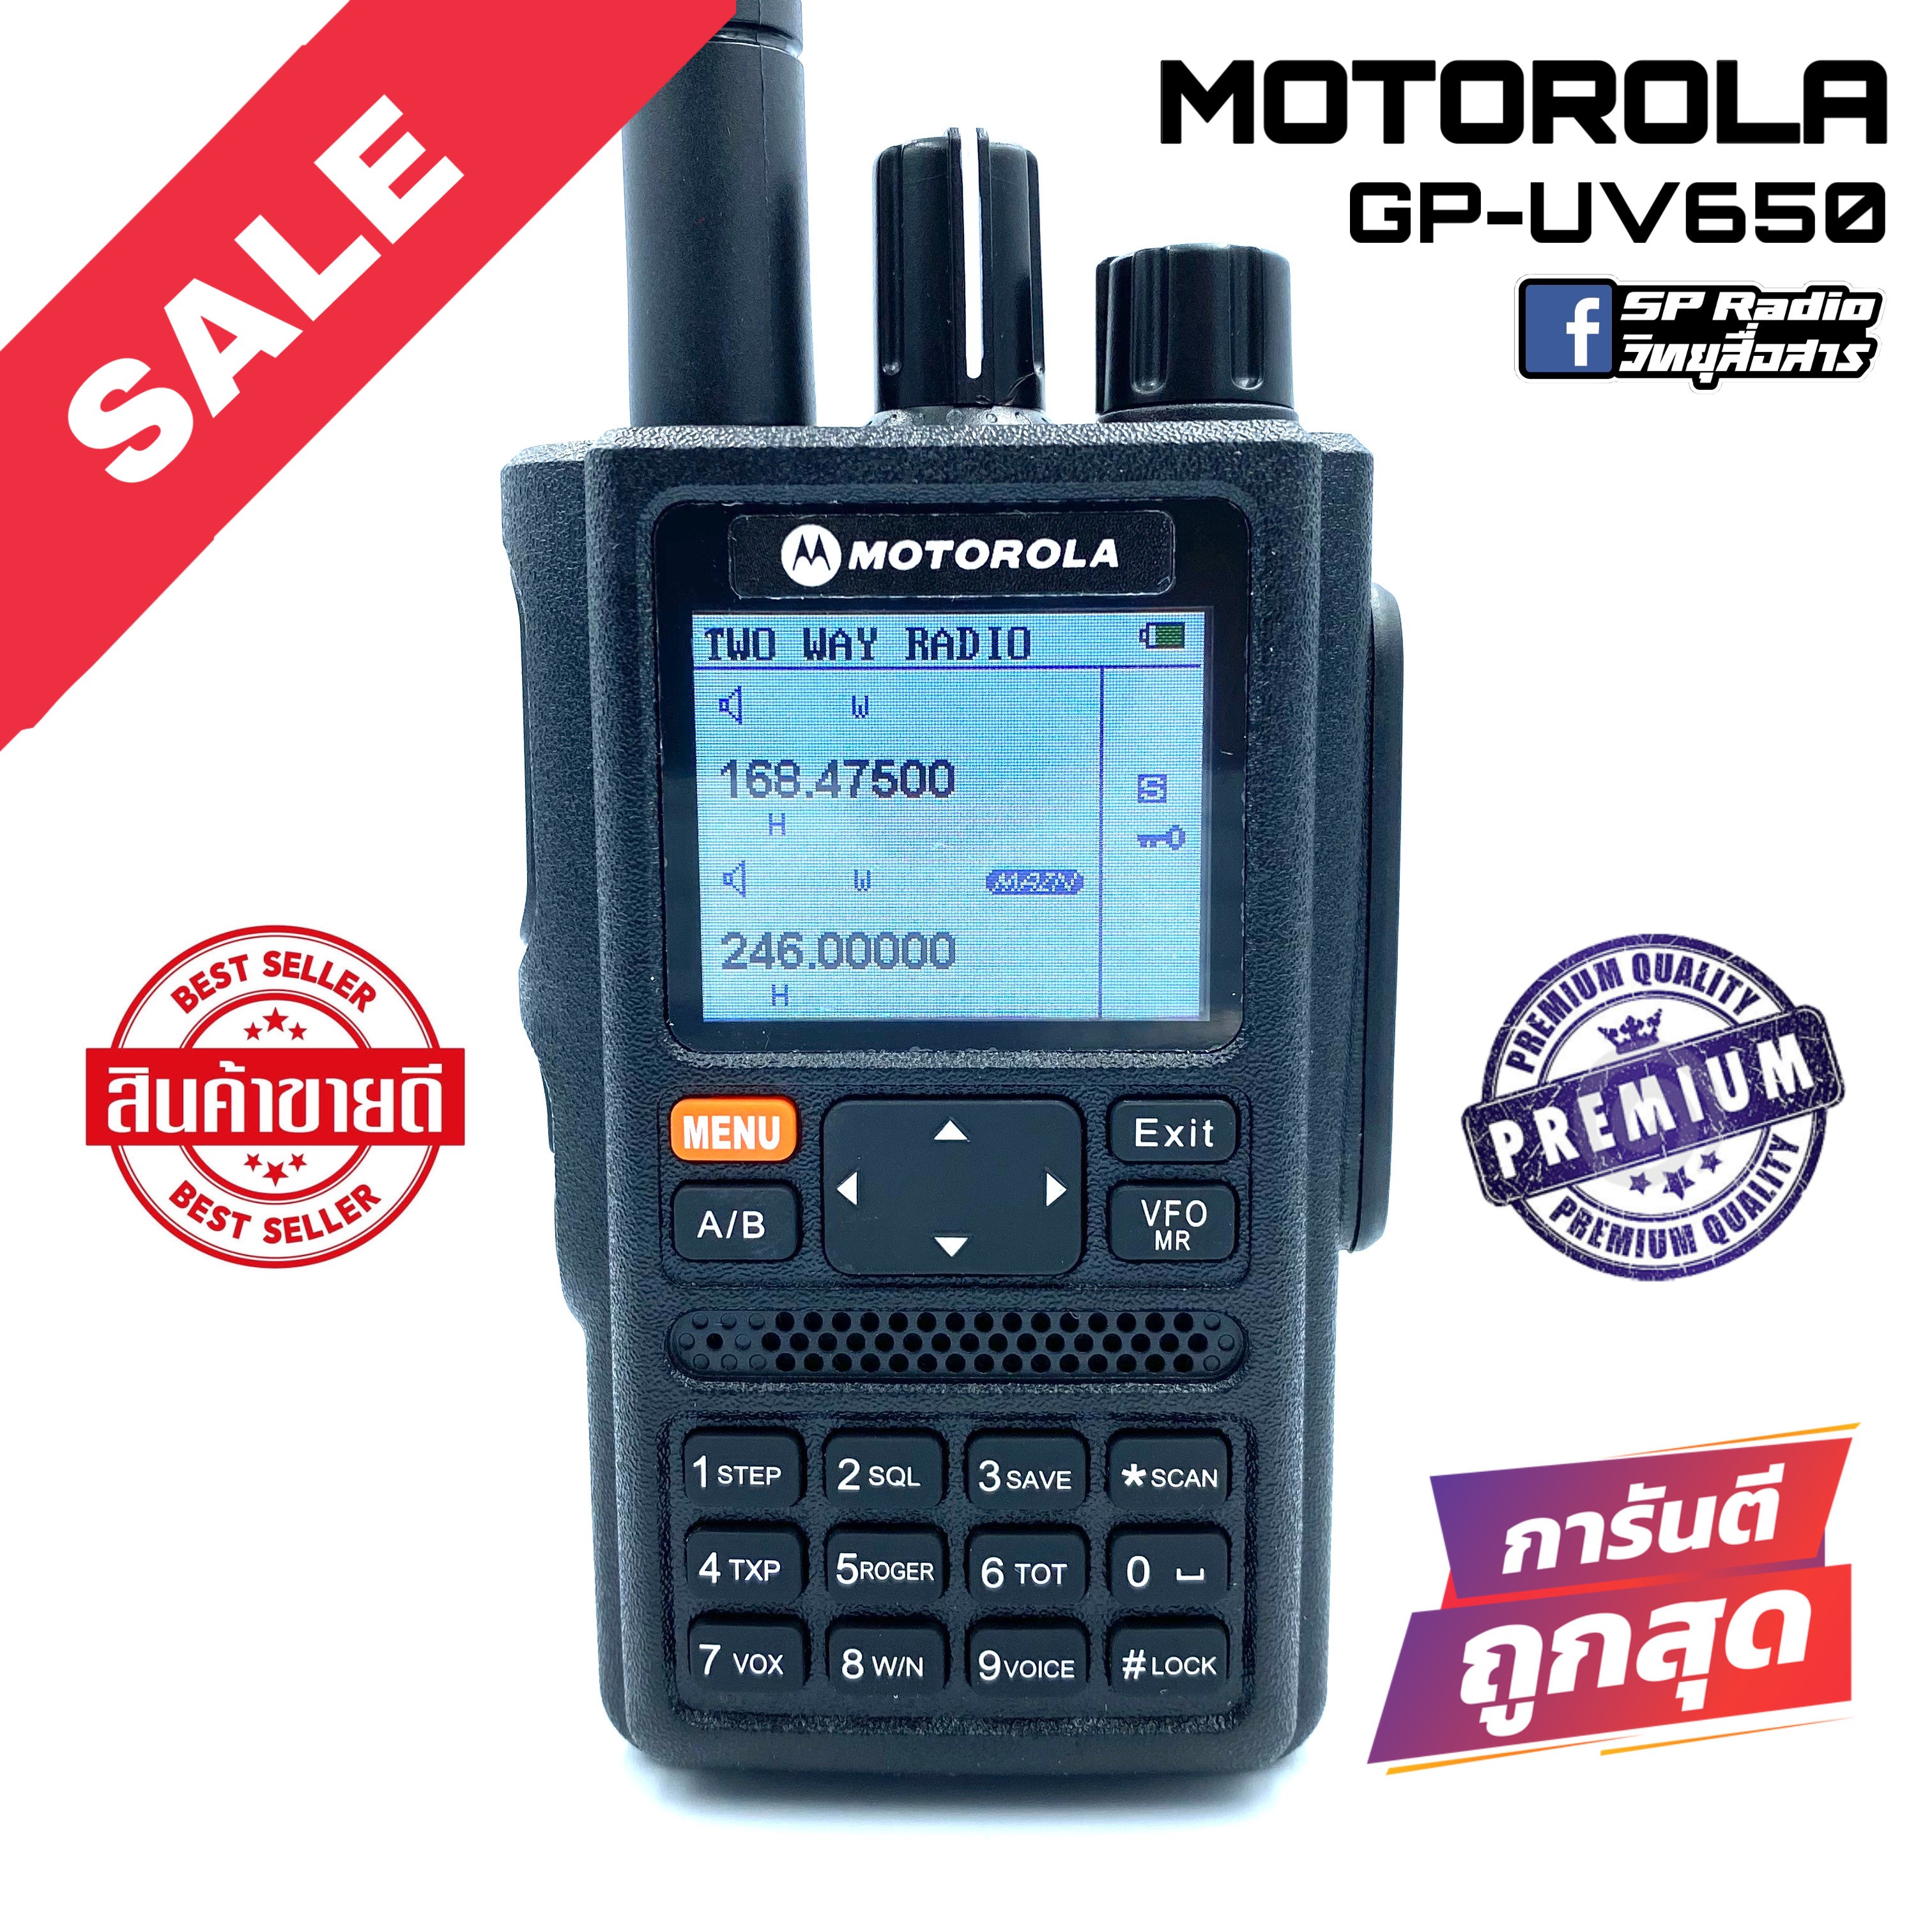 วิทยุสื่อสาร Motorola รุ่น GP-UV650 สีดำ